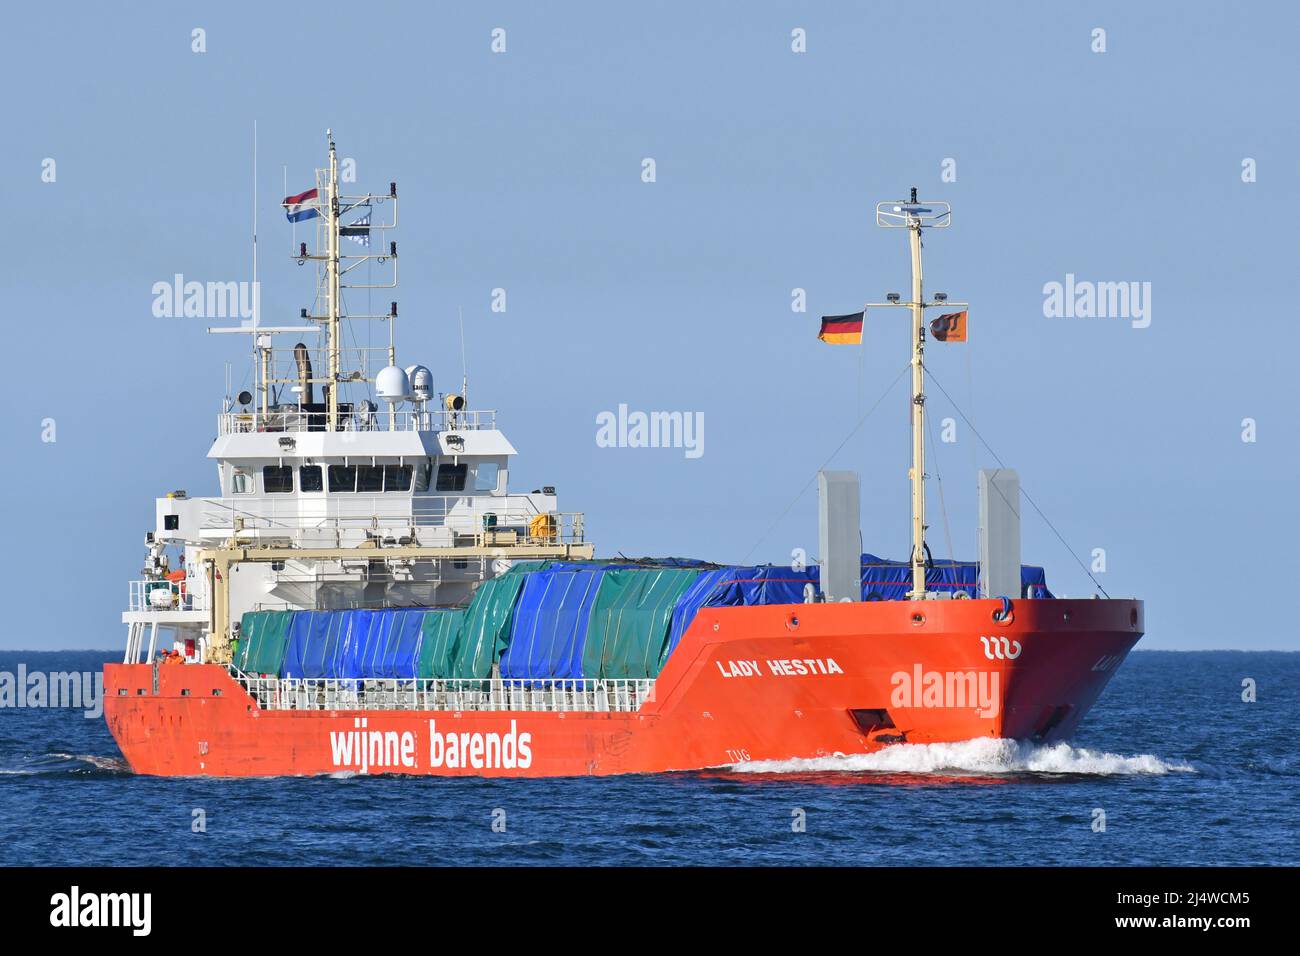 General Cargo Ship LADY HESTIA Stock Photo